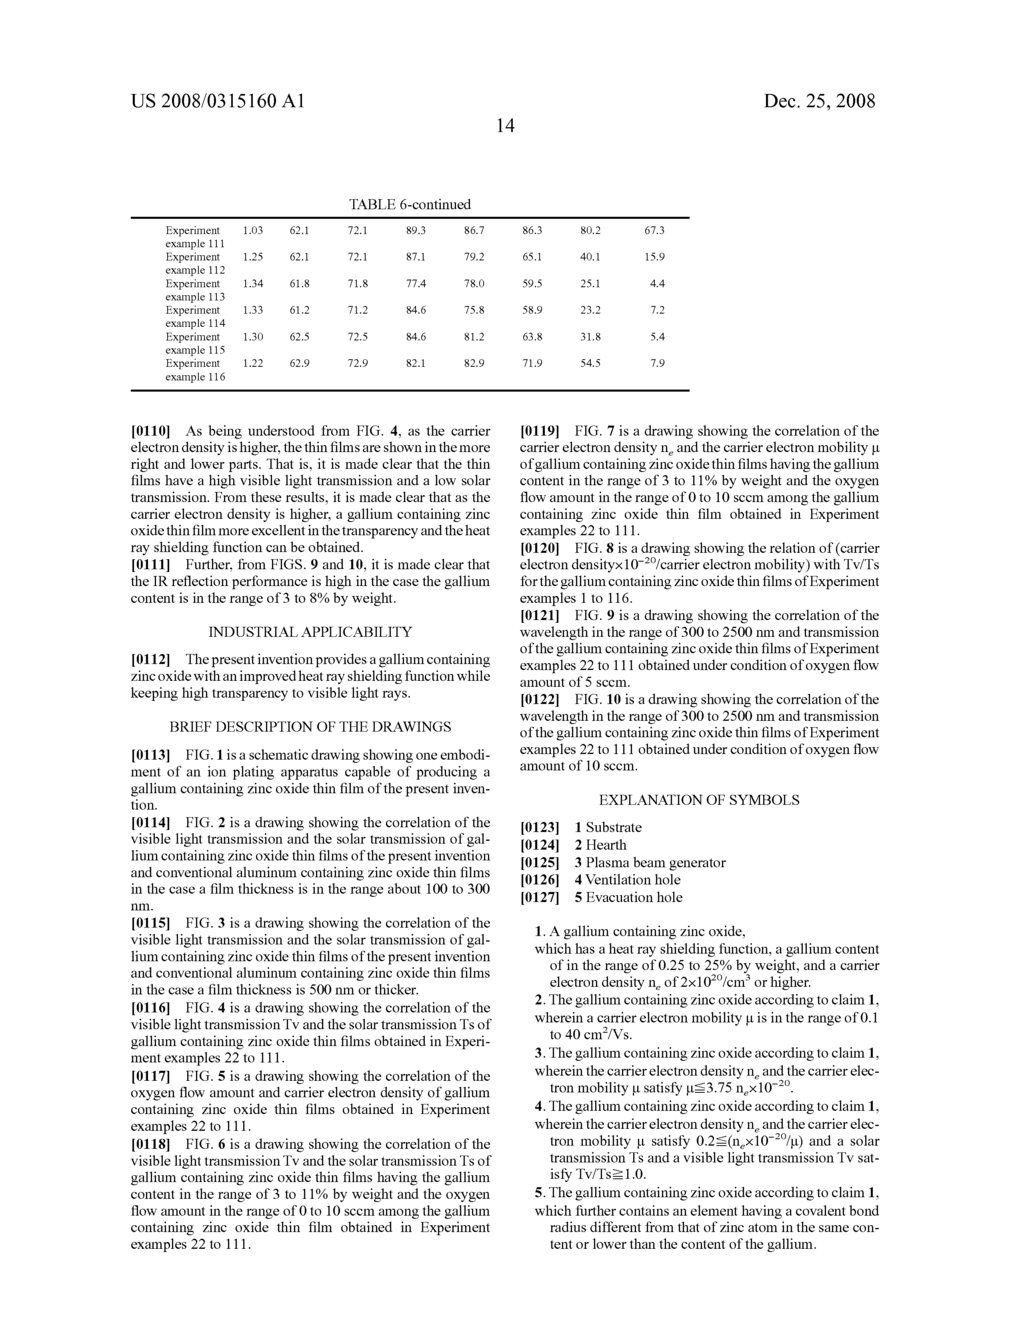 Gallium Containing Zinc Oxide - diagram, schematic, and image 25